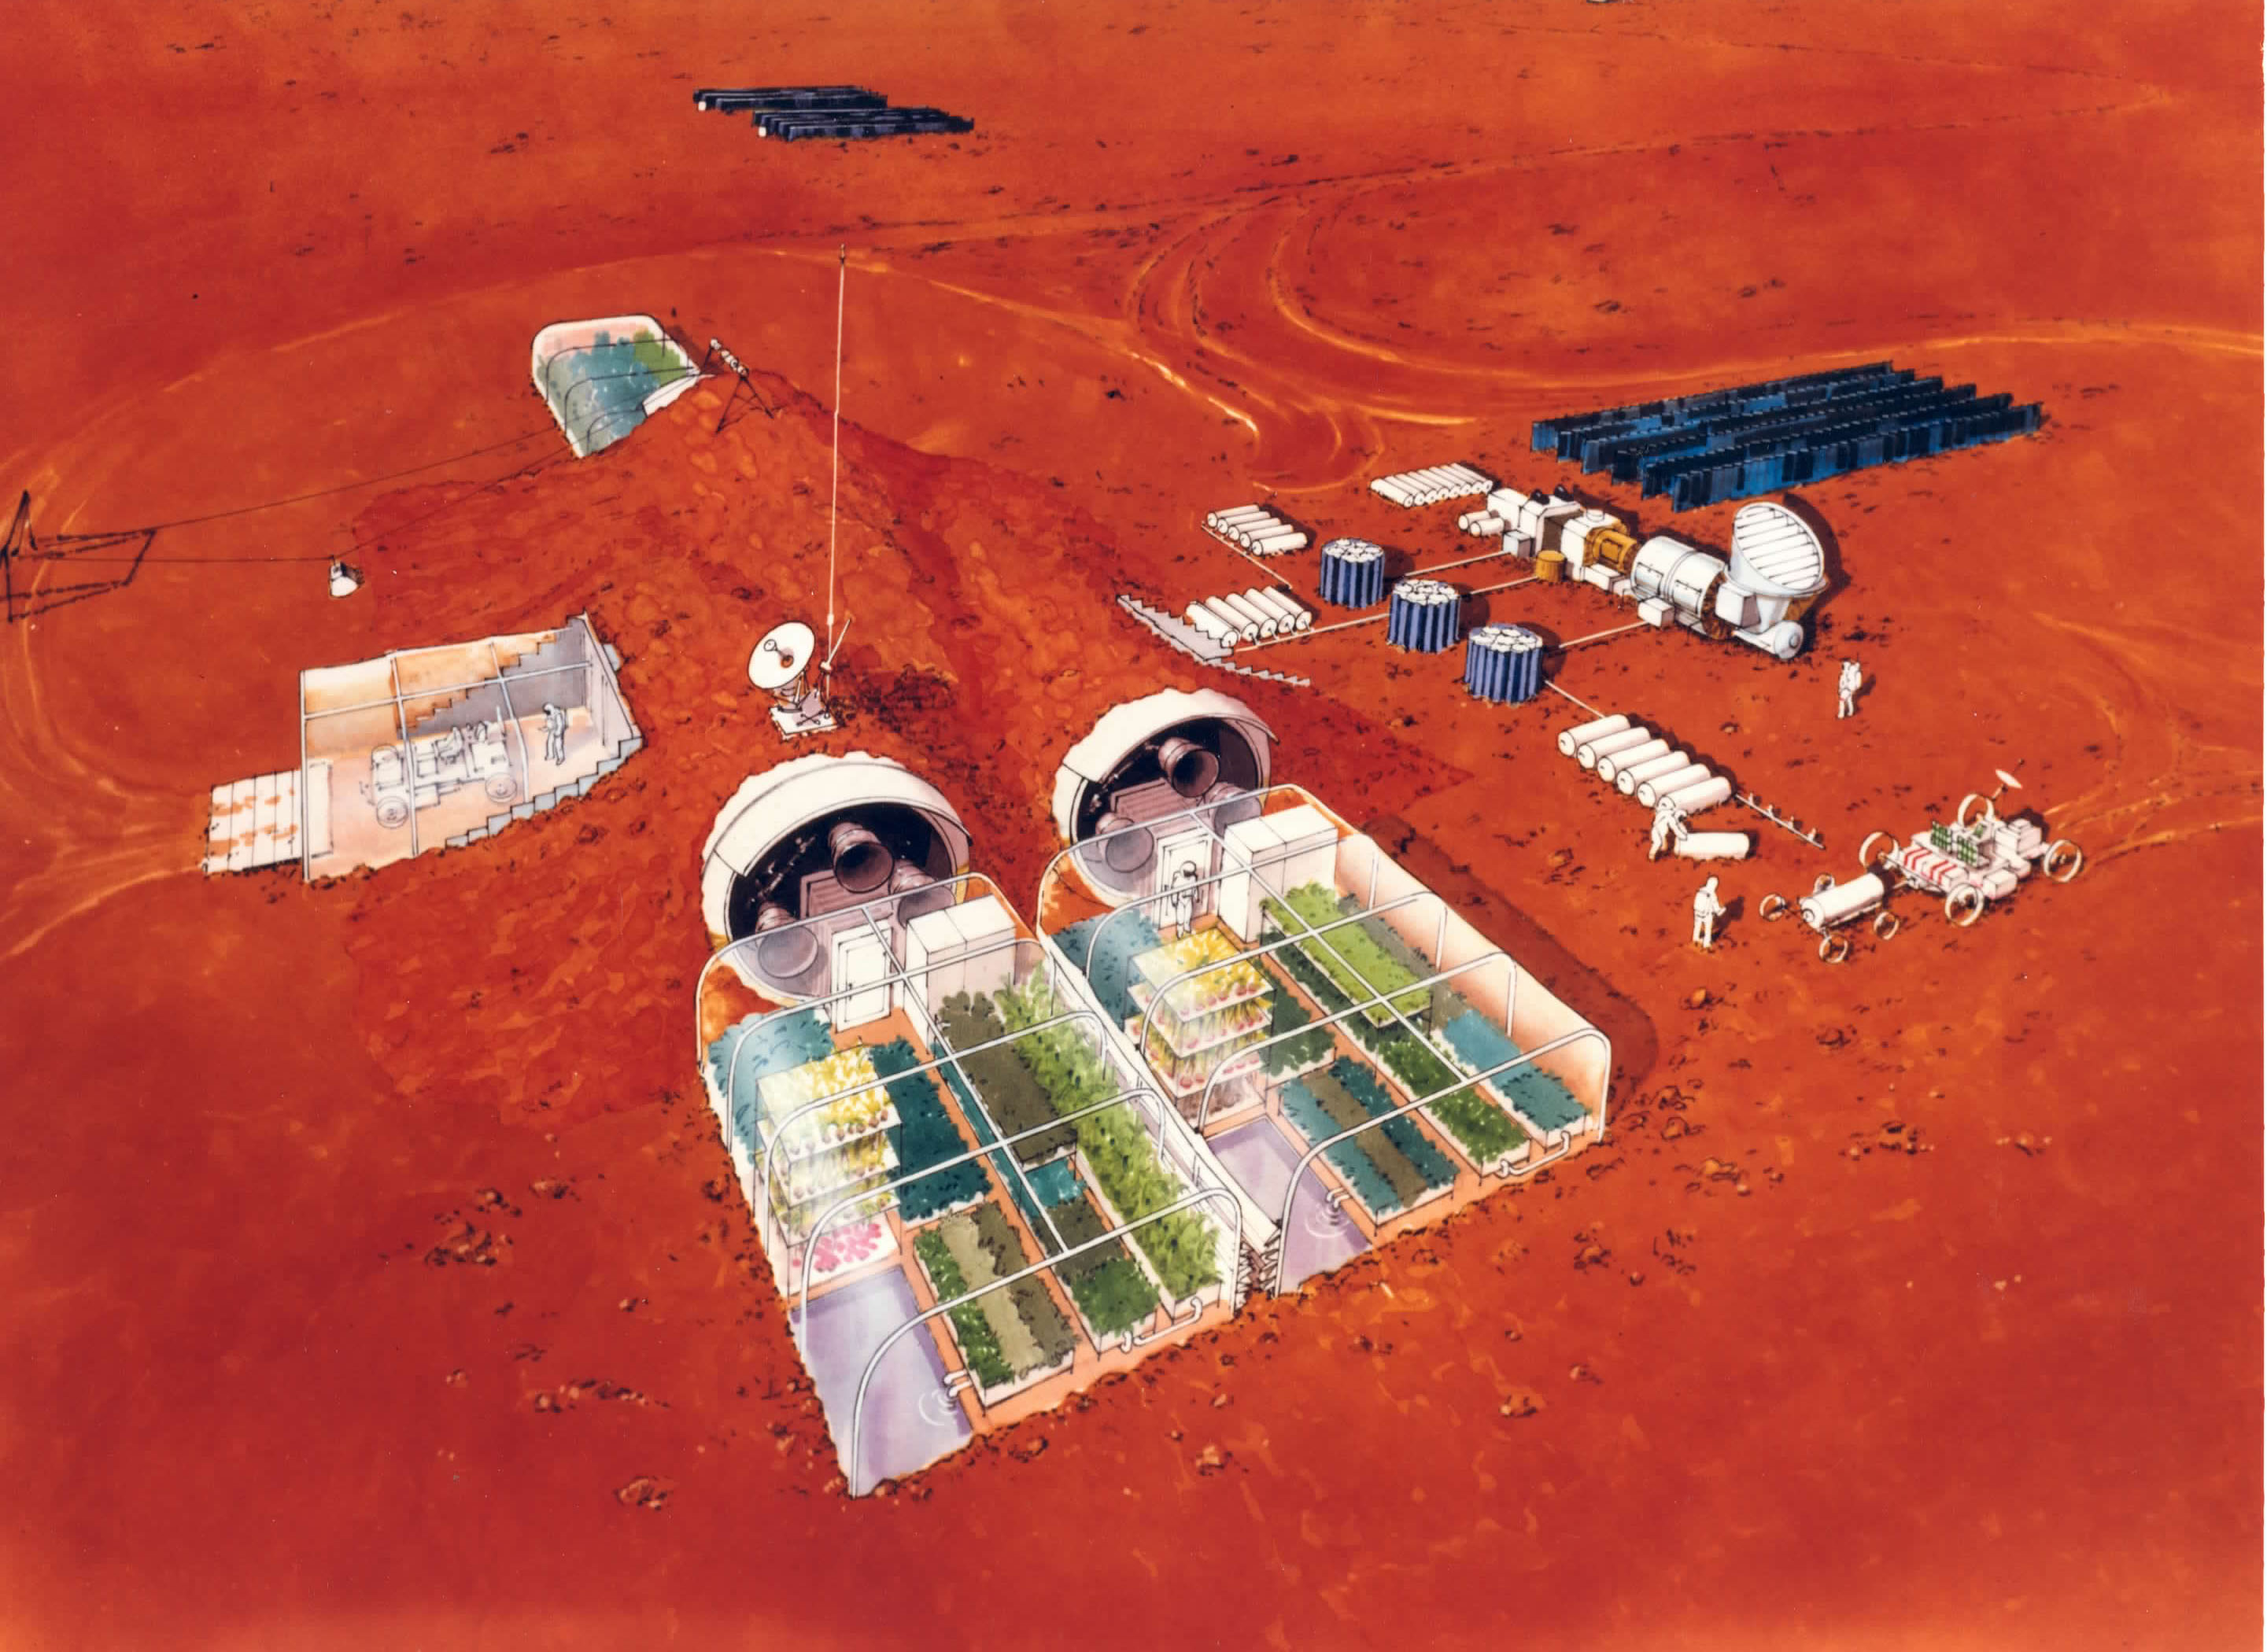 Concepção artística de um habitat de uma colonização em Marte.